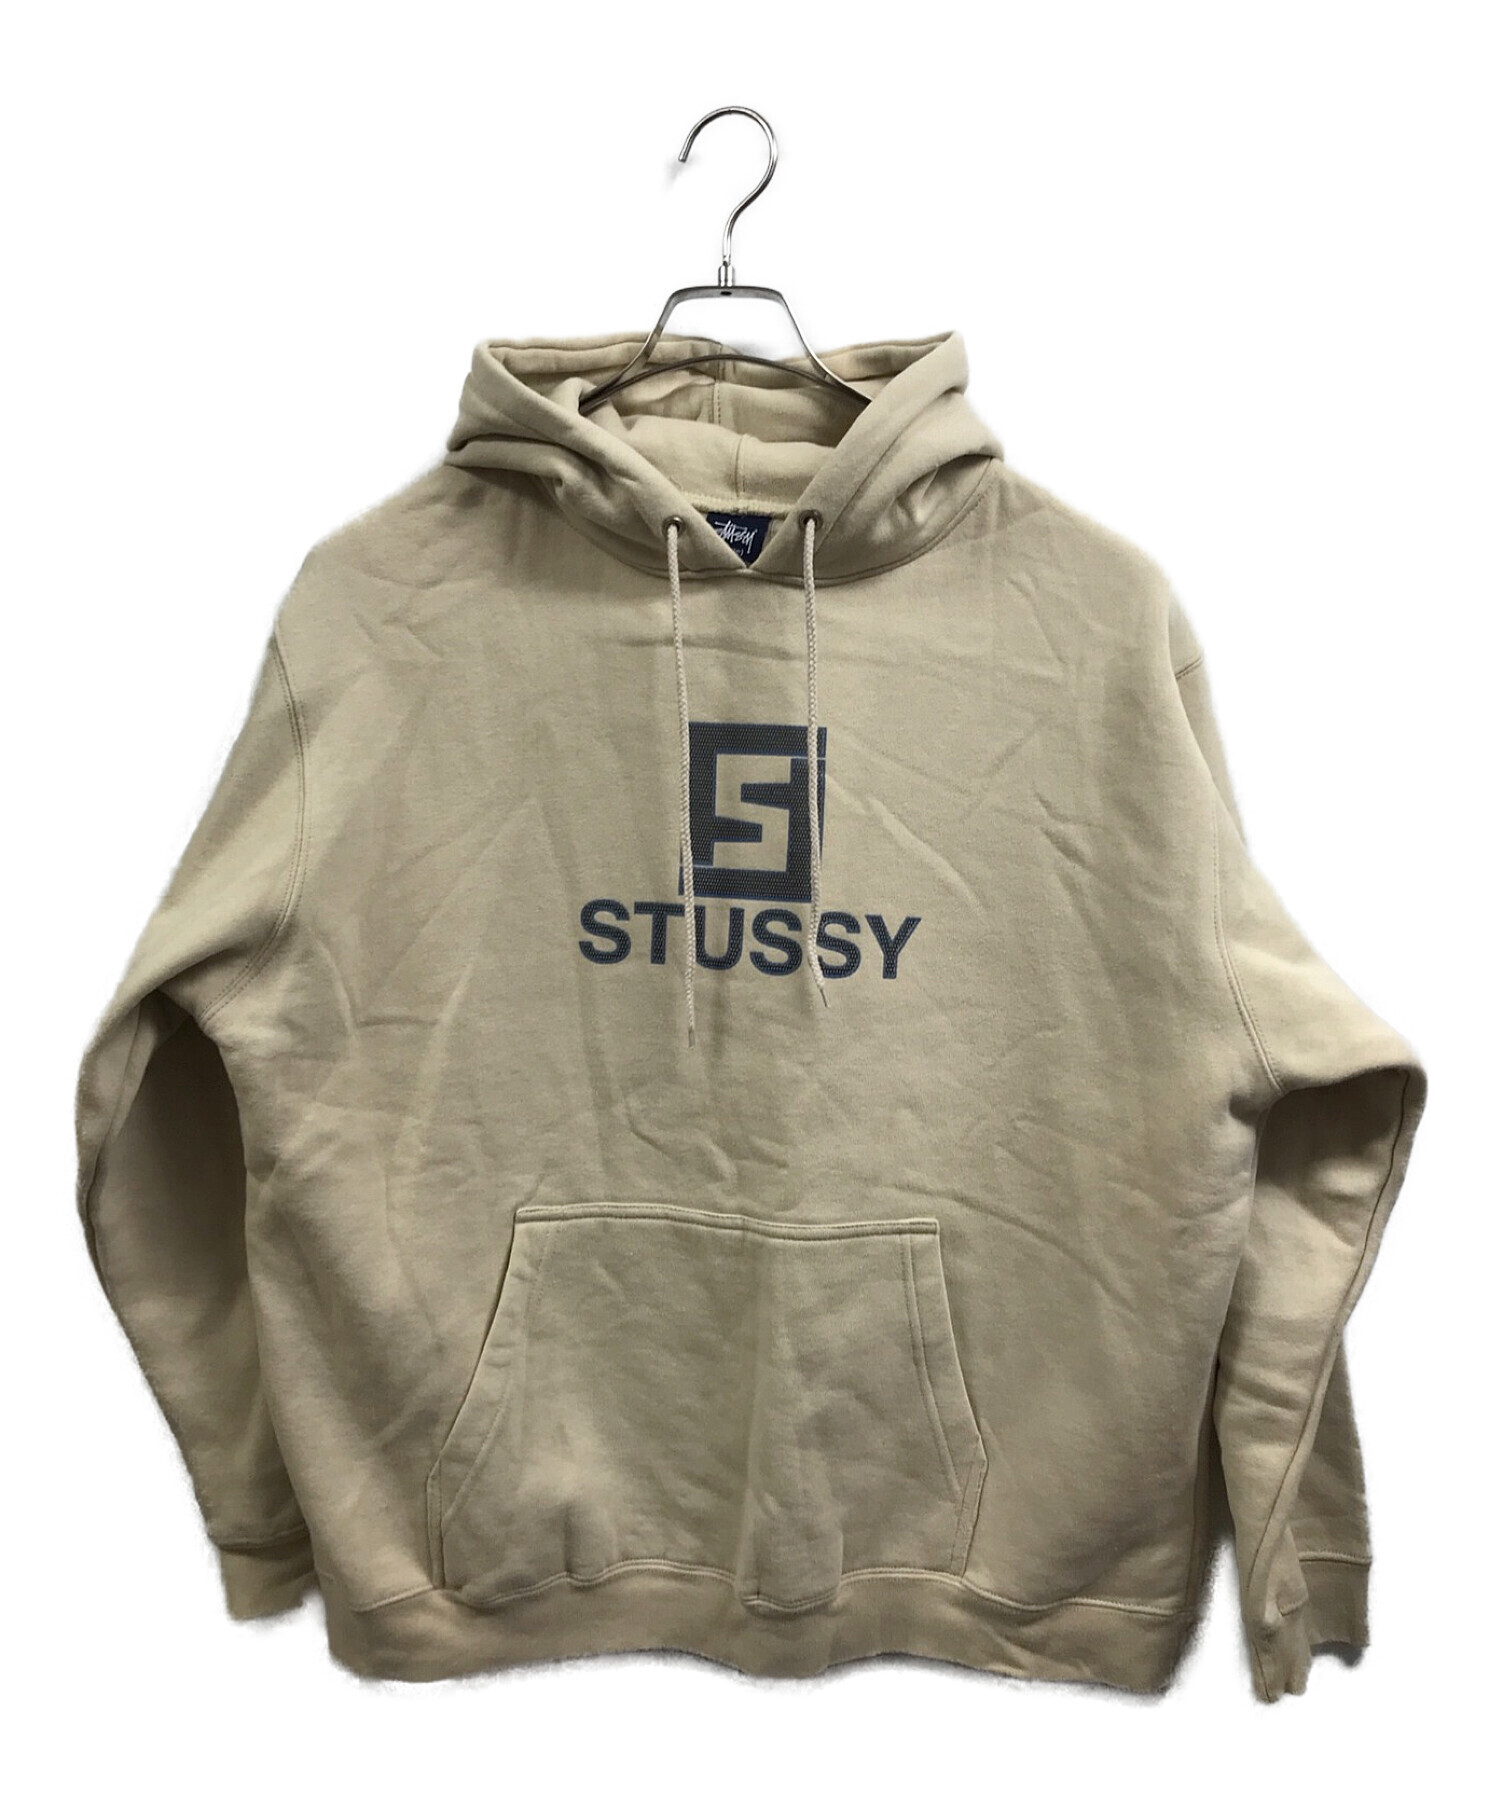 stussy (ステューシー) 90'sロゴパーカー ベージュ サイズ:L